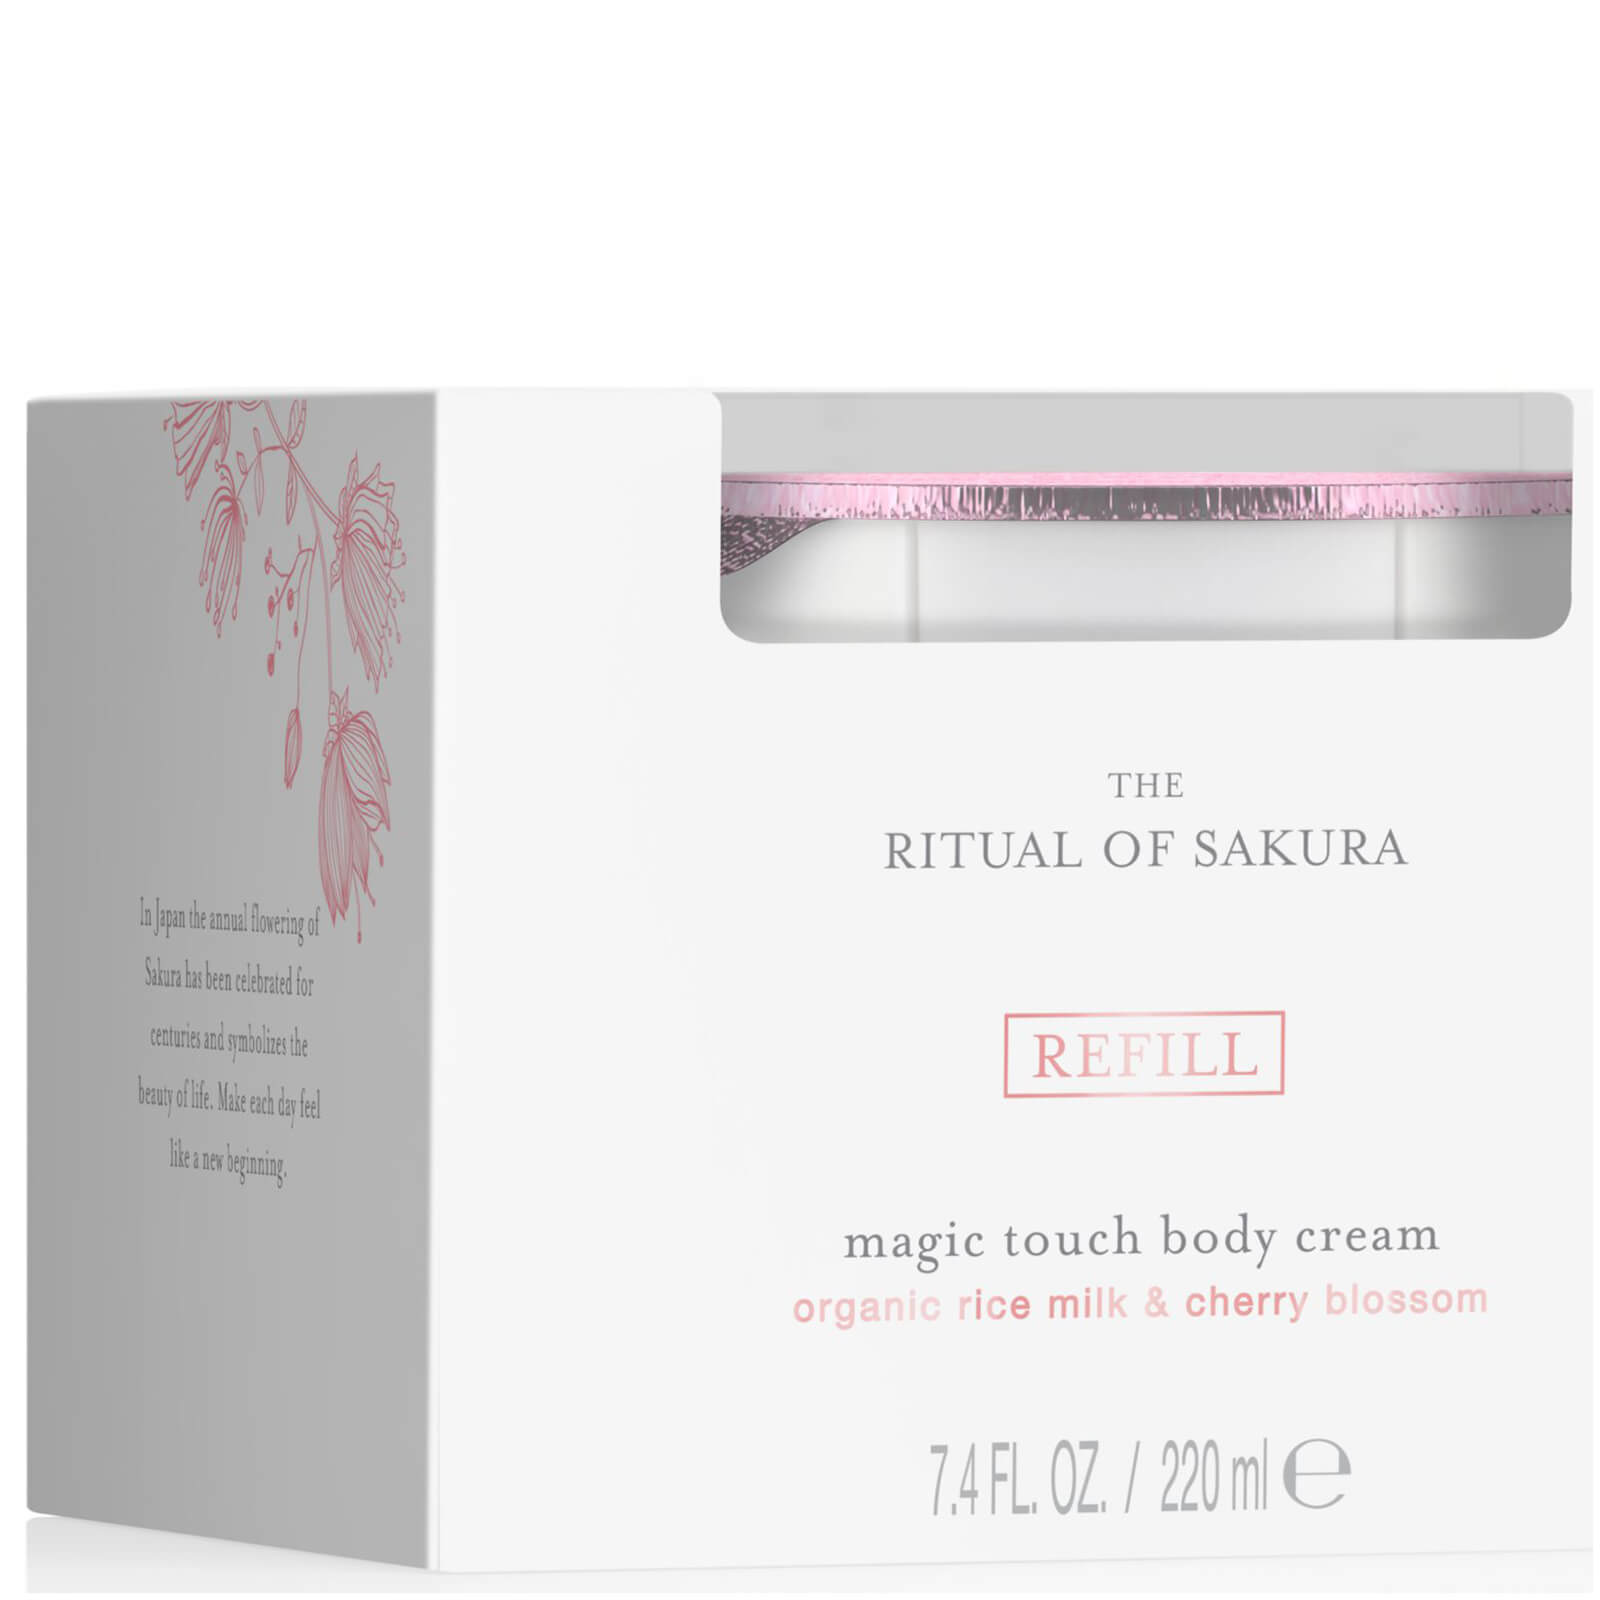 The Ritual of Sakura Body Cream Refill